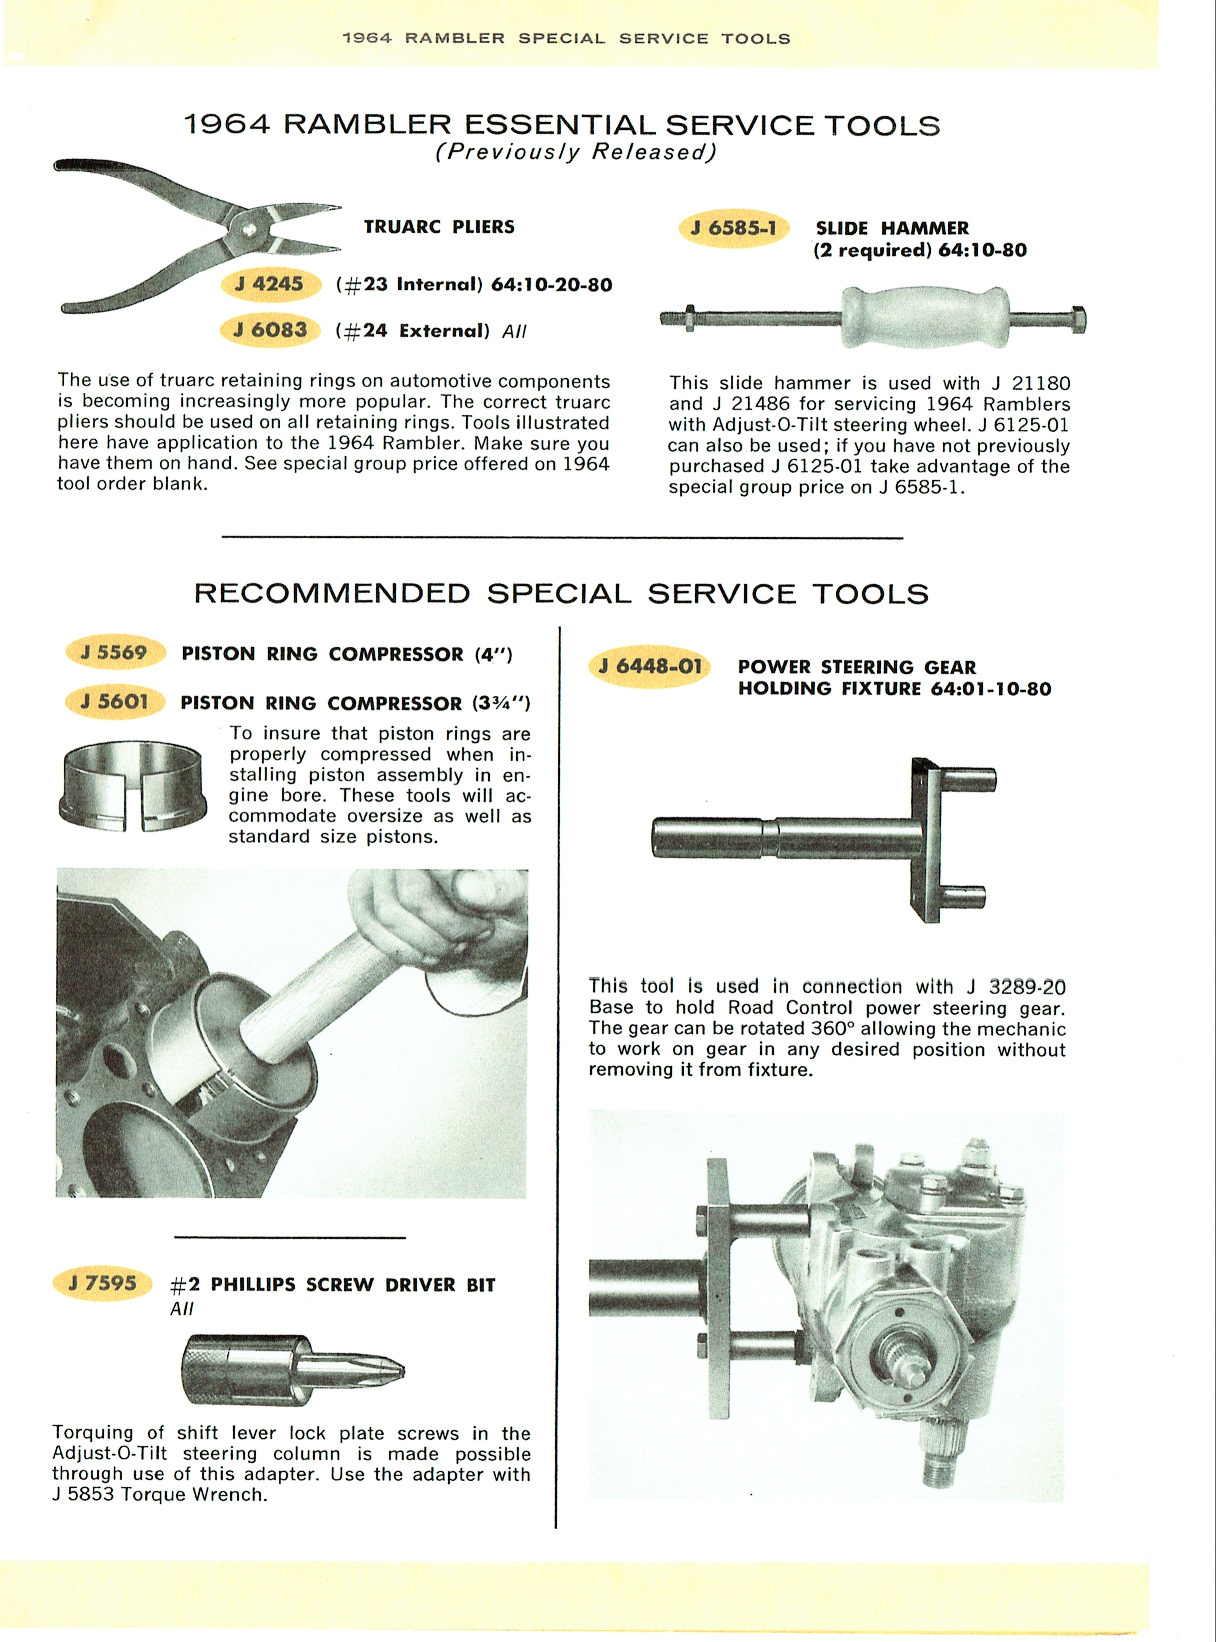 1964_Rambler_Special_Tools-05